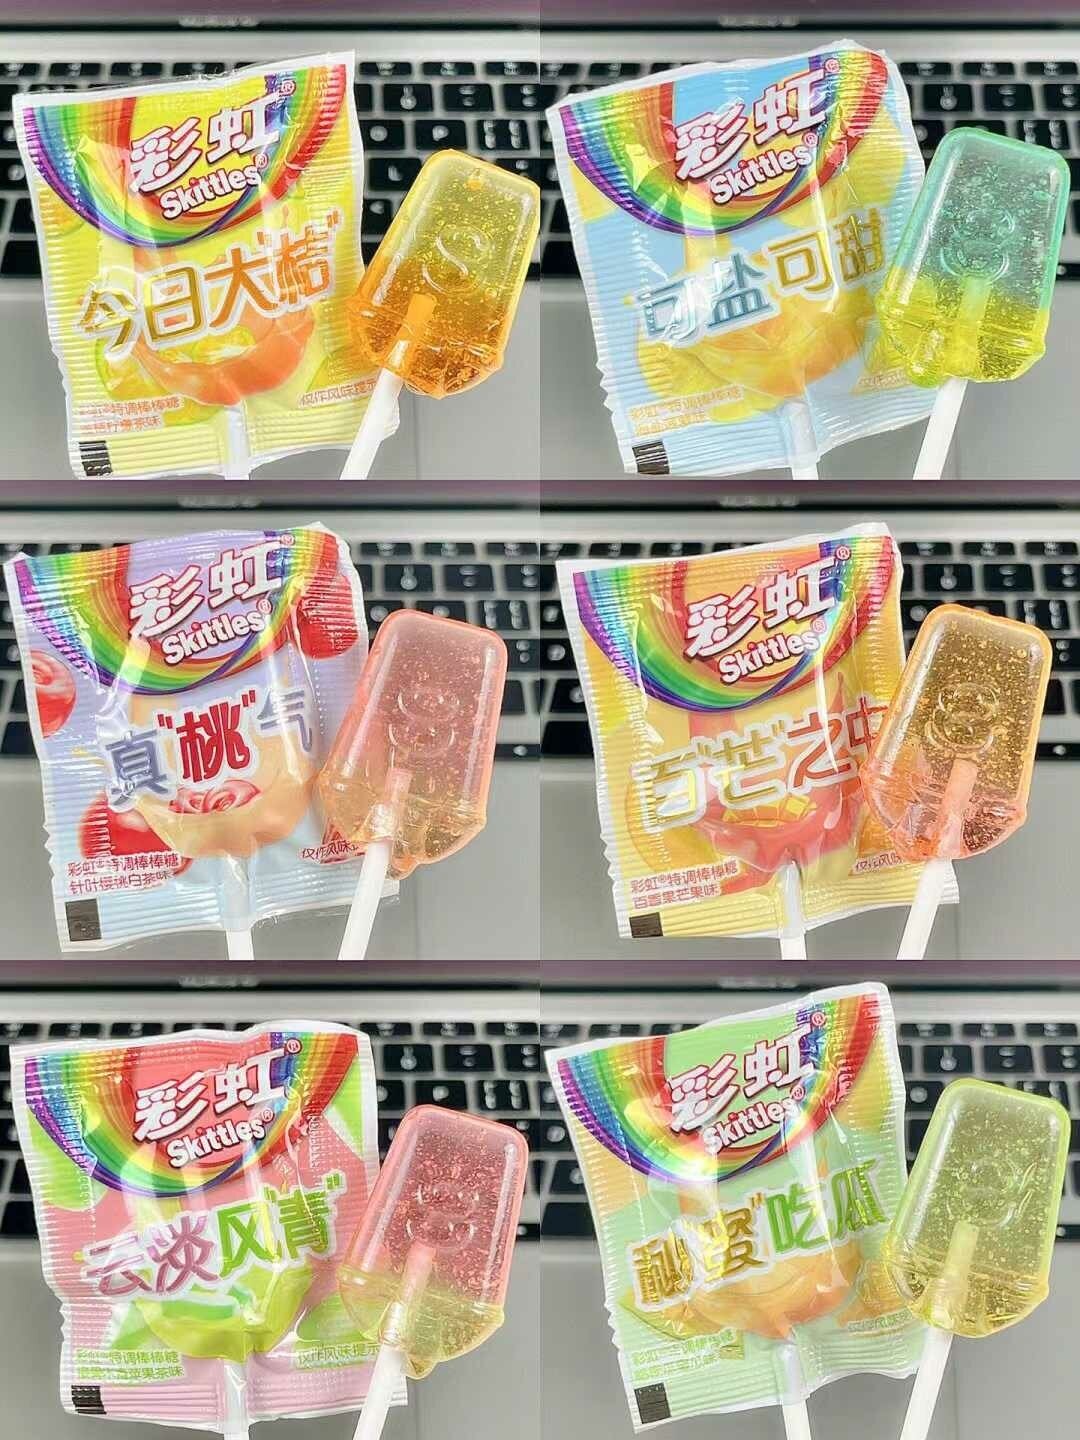 Леденцы на палочке Skittles Colorful Fruit, Fruit Tea фруктовый и цитрусовый микс (2 пачки по 5 леденцов) по 54 г Япония - фотография № 4